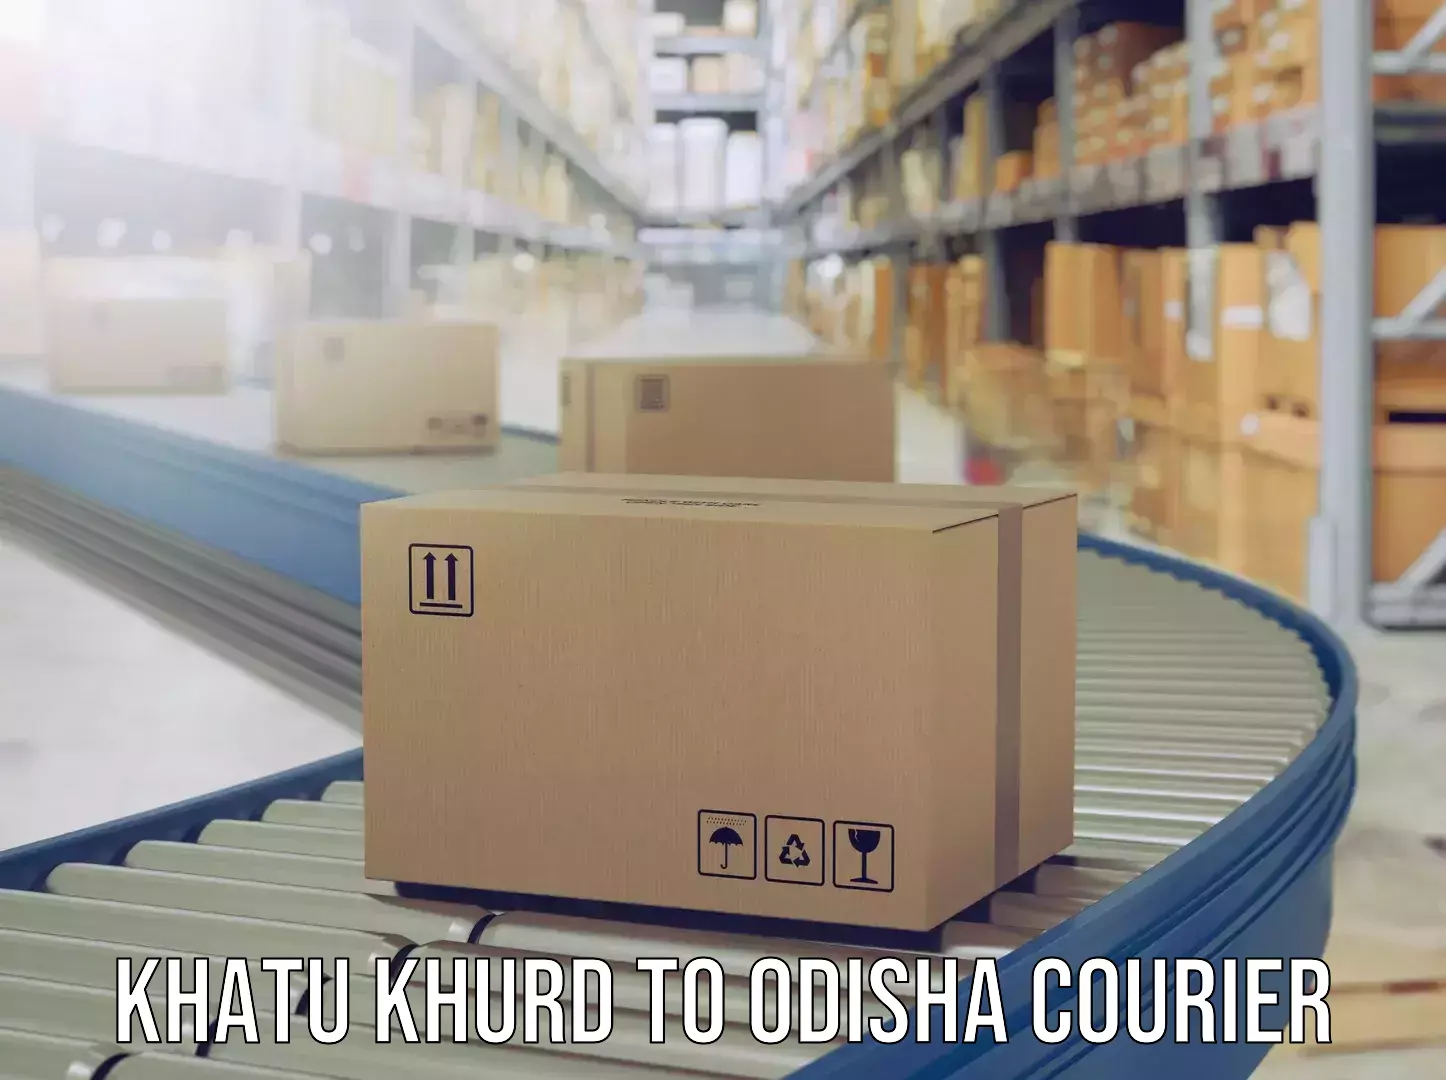 Luggage shipping management Khatu Khurd to Odisha